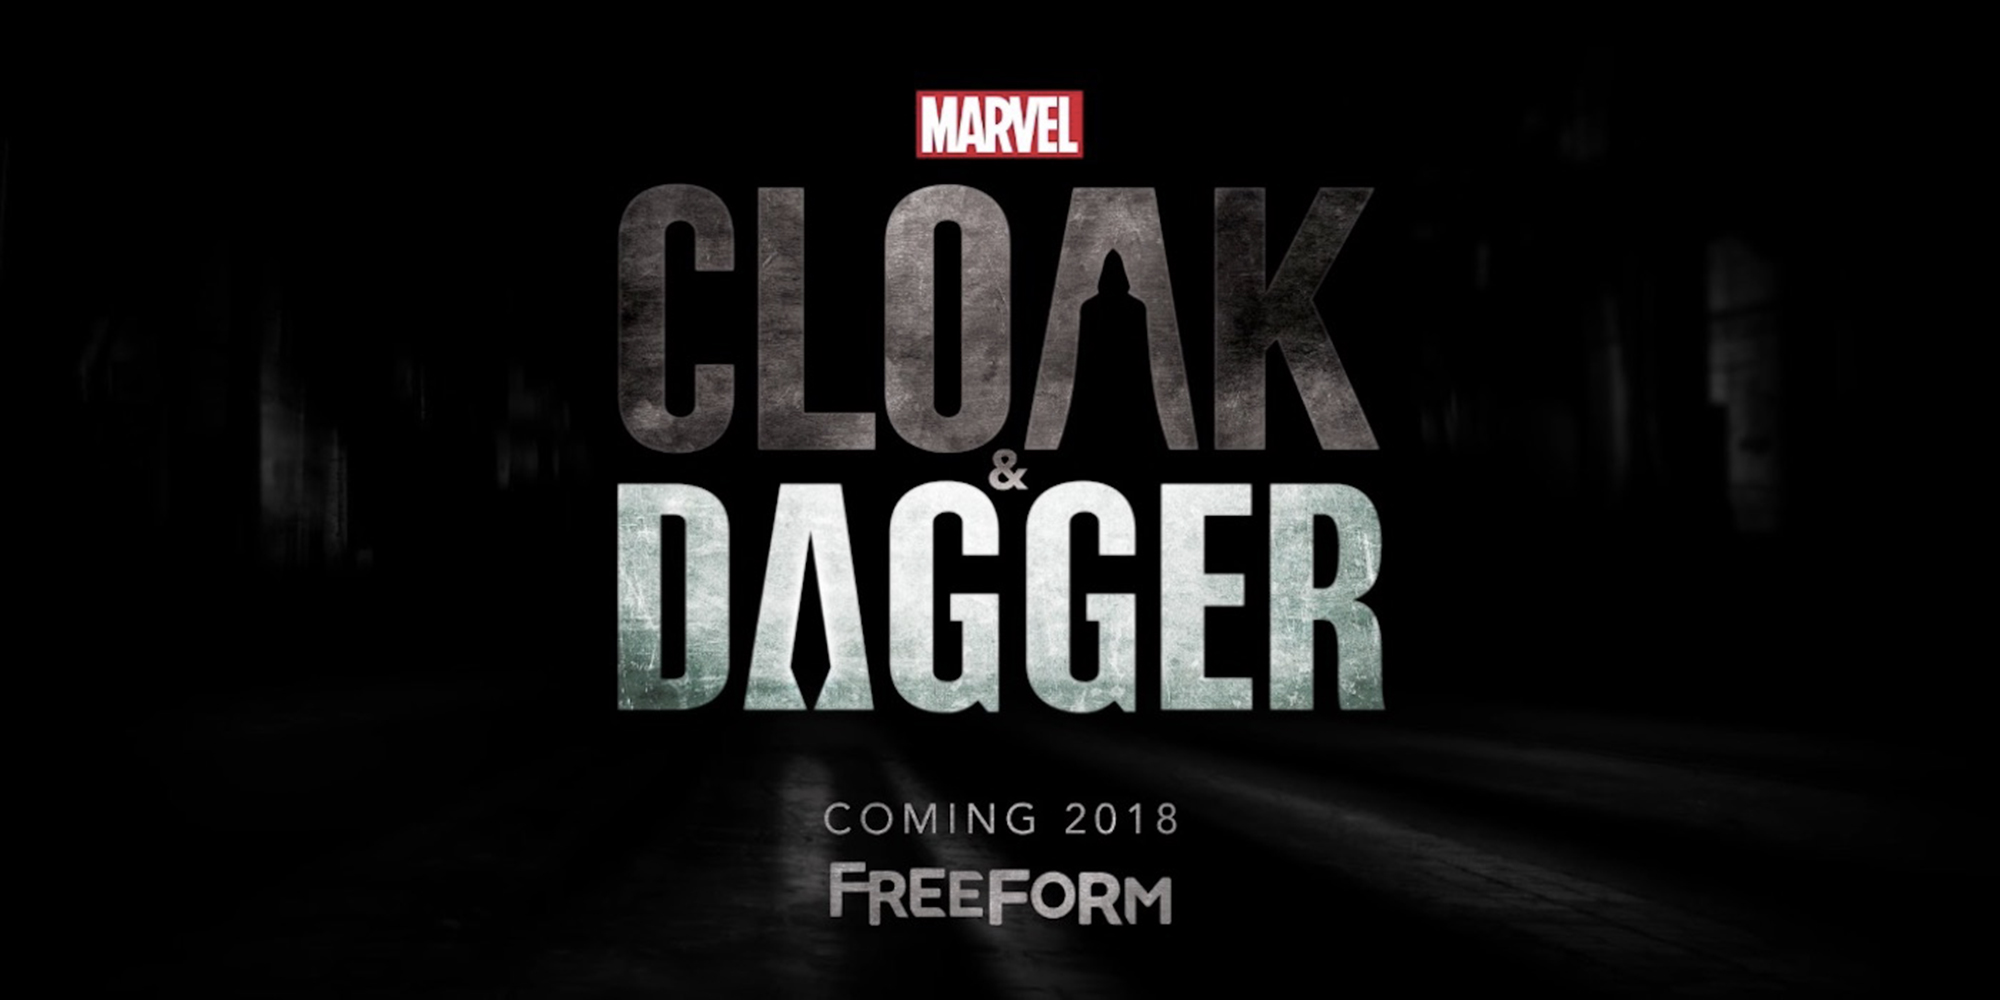  Les jeunes héros Marvel Cloak & Dagger débarquent à la TV